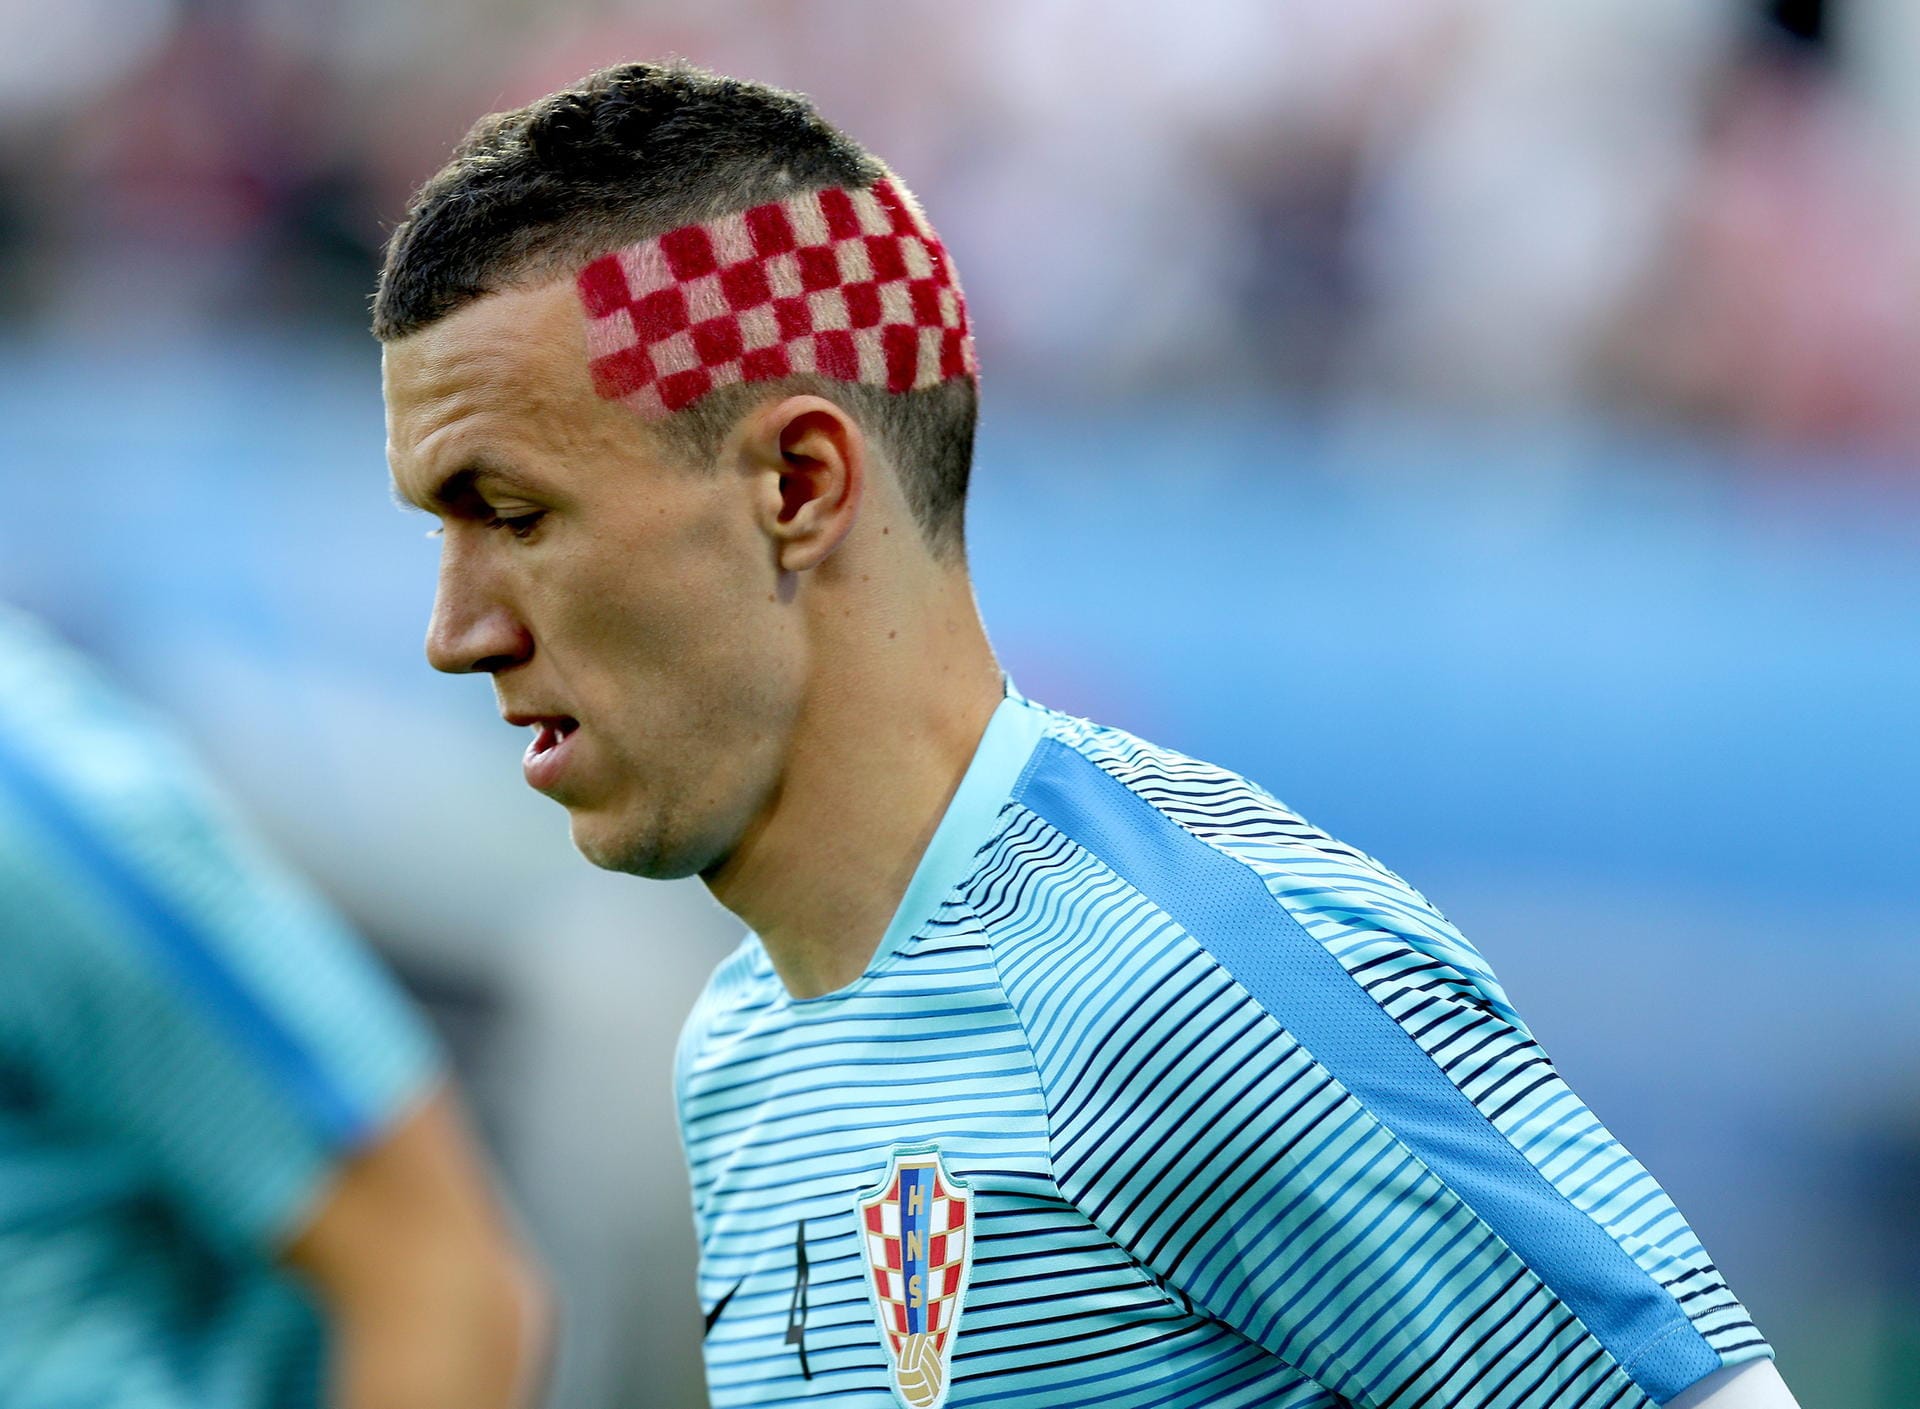 Kroatien schlug derweil souverän Spanien mit 2:1 - und hofft ebenfalls auf den großen Wurf. Der Ex-Wolfsburger Ivan Perisic besticht derweil mit kurioser Frisur: die kroatische Fahne im Haar, den Patriotismus im Herzen.